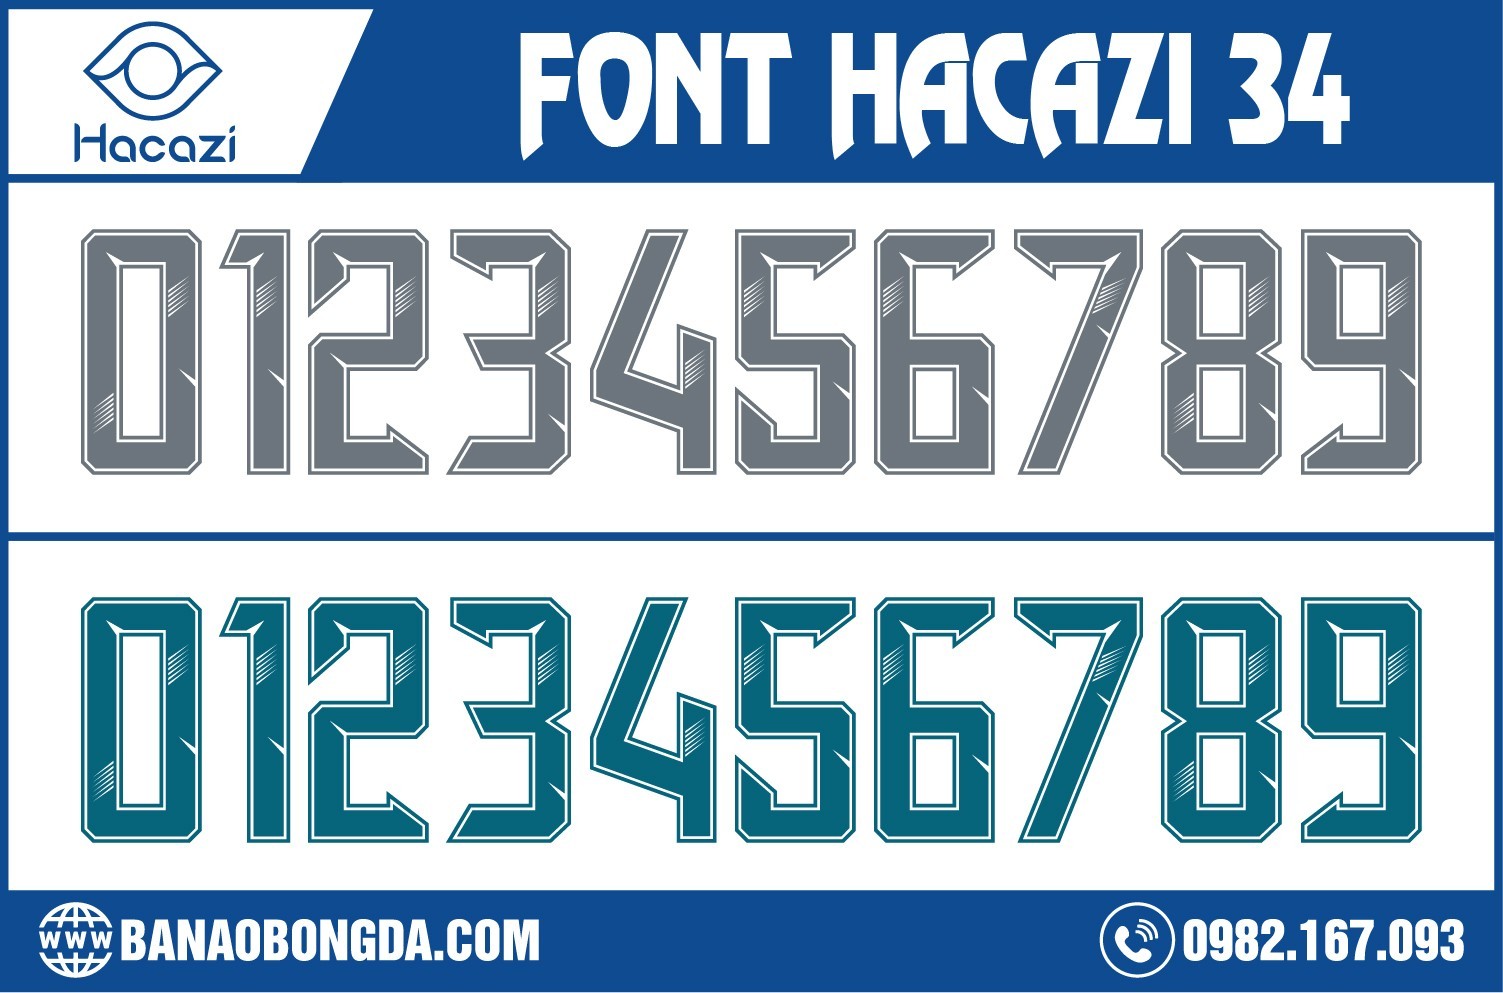 Bộ sưu tập font số áo bóng đá 34 Hacazi Sport được thiết kế đơn giản nhưng lại vô cùng nổi bật bởi màu xám dưới đây chắc chắn sẽ không khiến bạn thất vọng về bộ font số này nhé! 